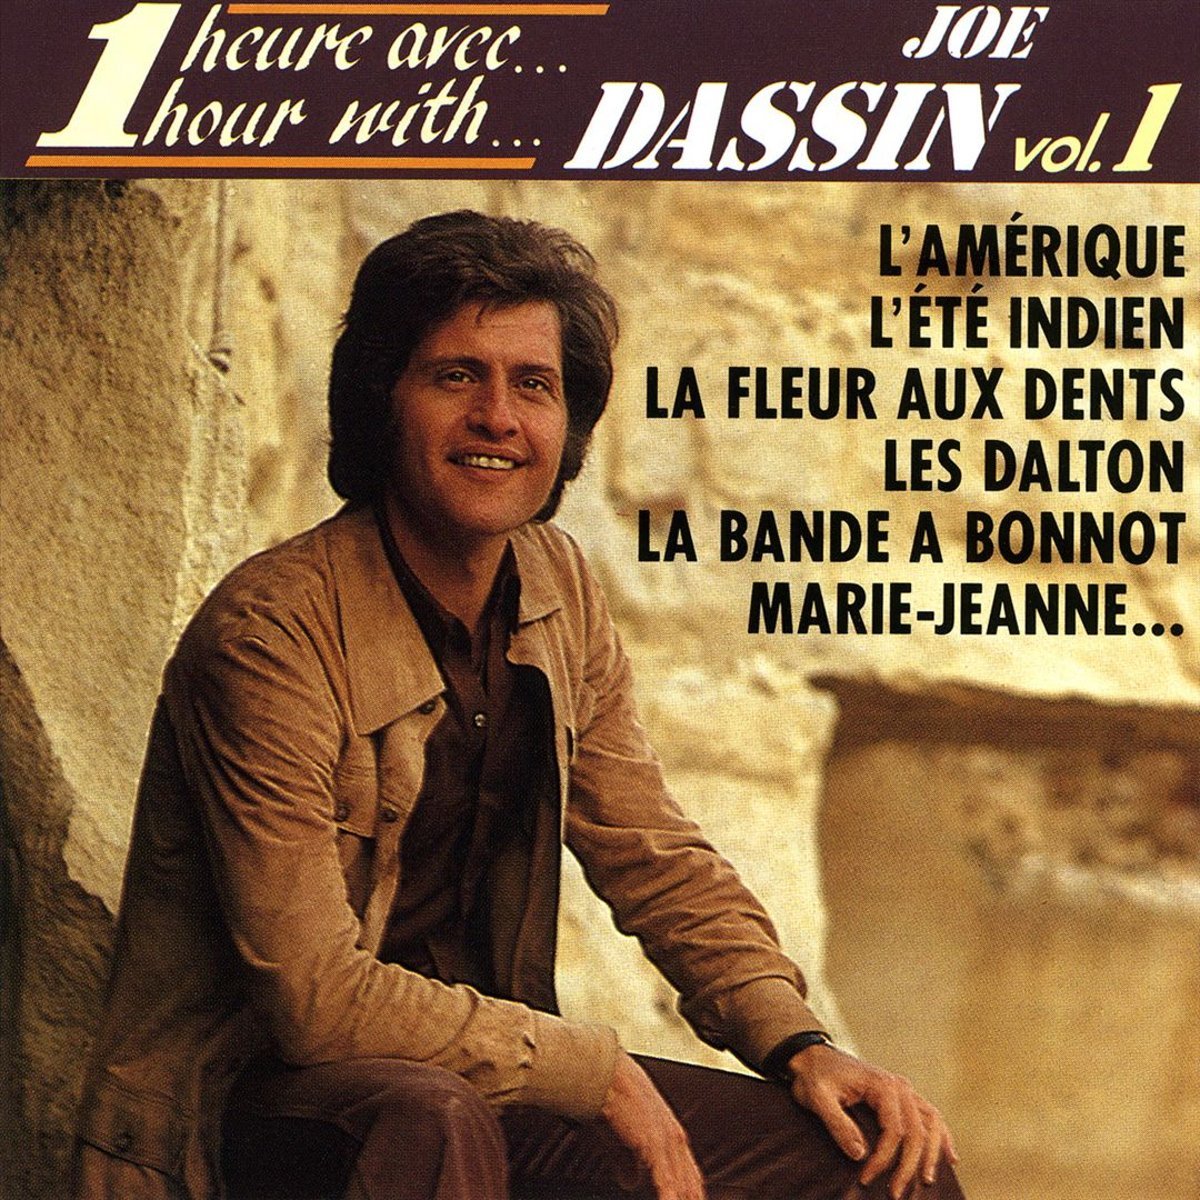 Популярные песни джо. Joe Dassin. Joe Dassin Vol.1. Joe Dassin фото. Джо Дассен обложка.